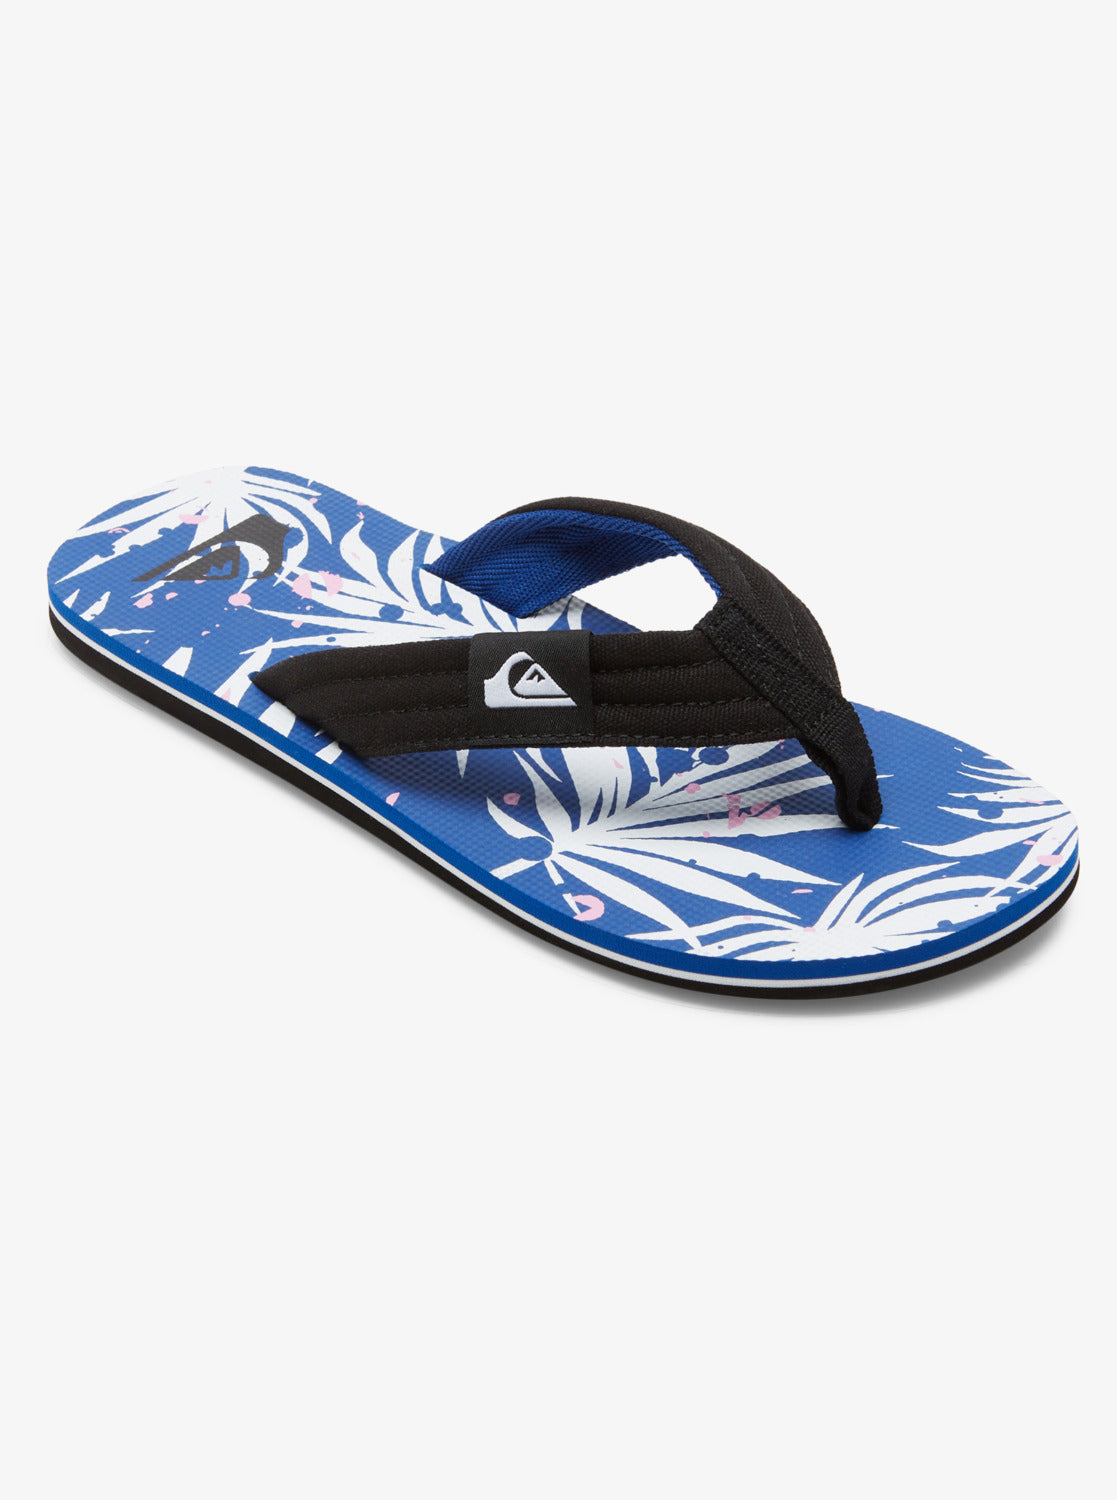 Molokai Layback Sandals - Black/Blue/White